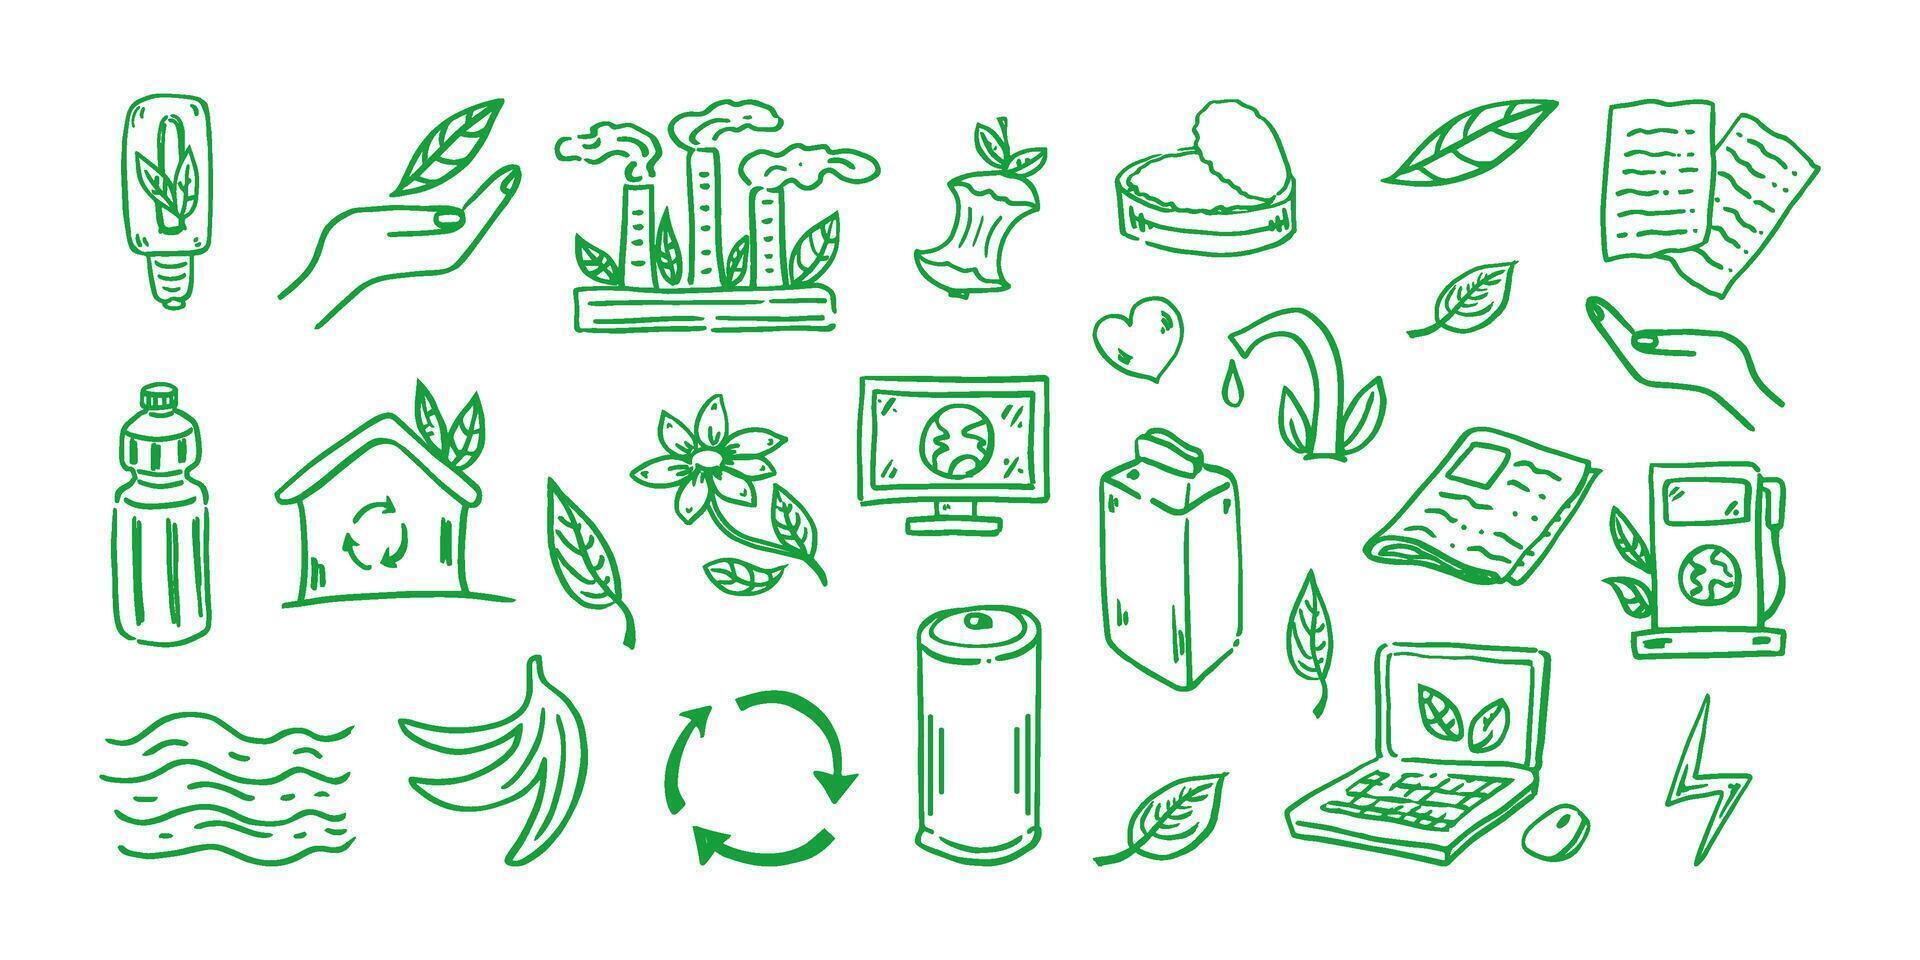 uppsättning av ekologi. ritad för hand klotter vektor illustration. ekologi problem, återvinning och grön energi ikoner. miljö- symboler.